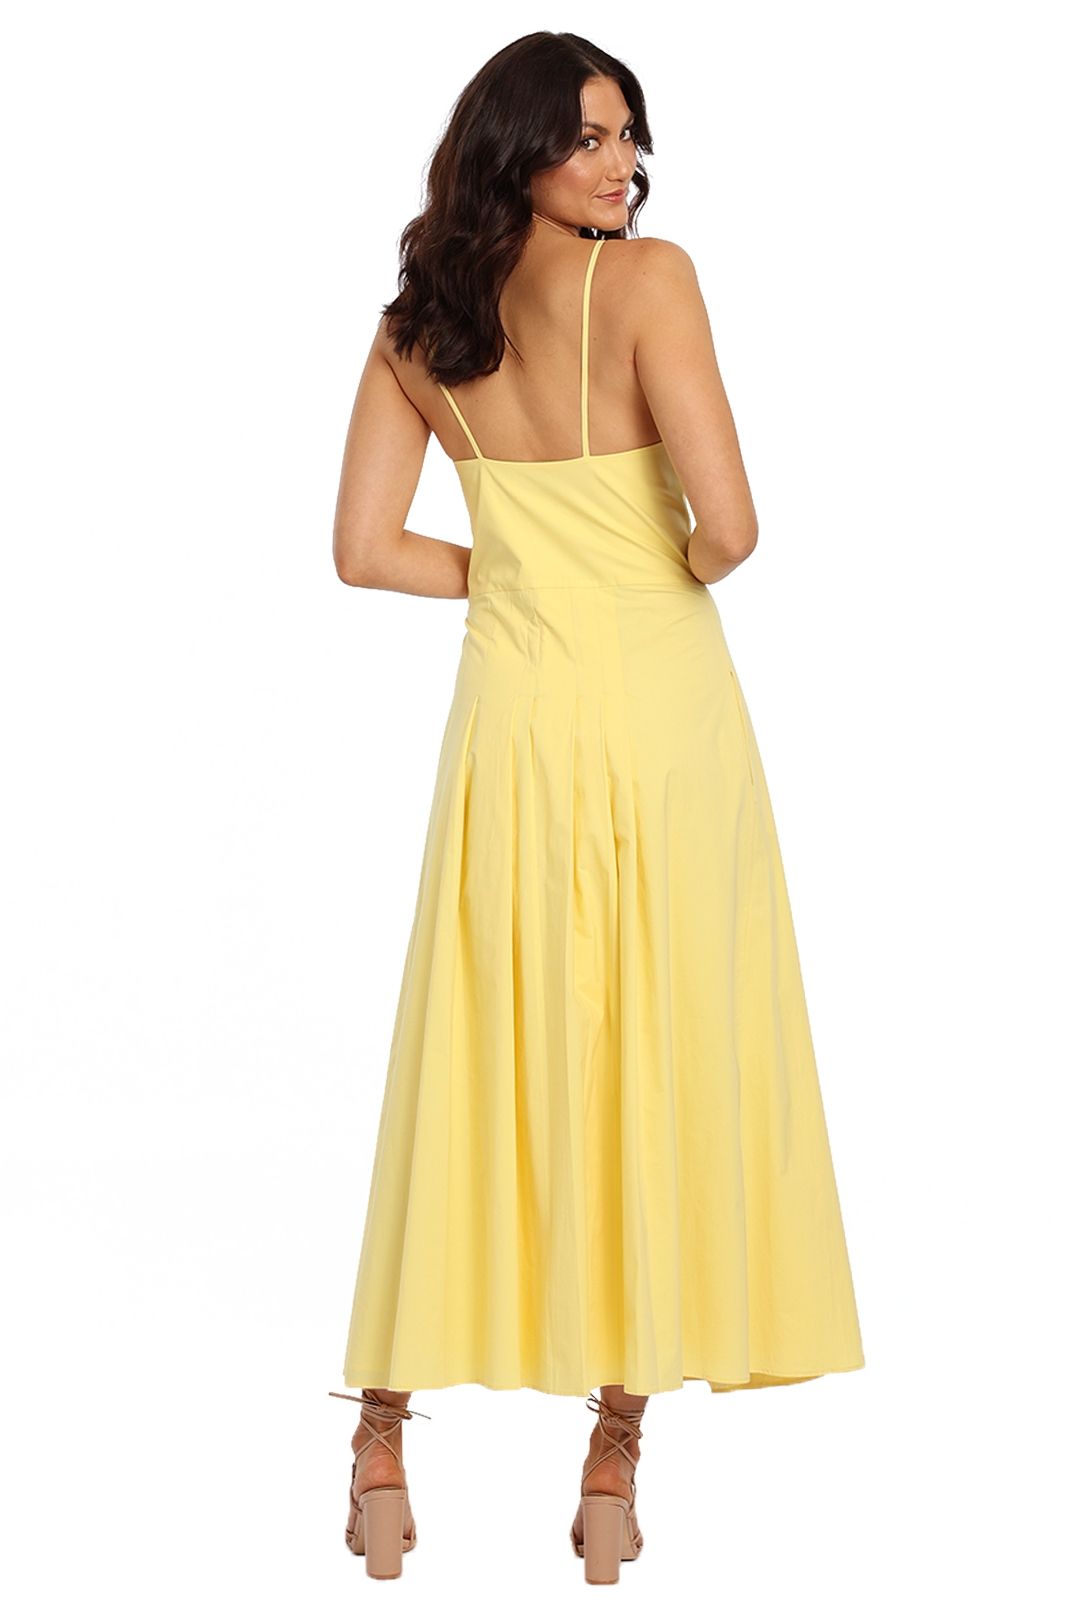 Anna Quan Odette Dress yellow